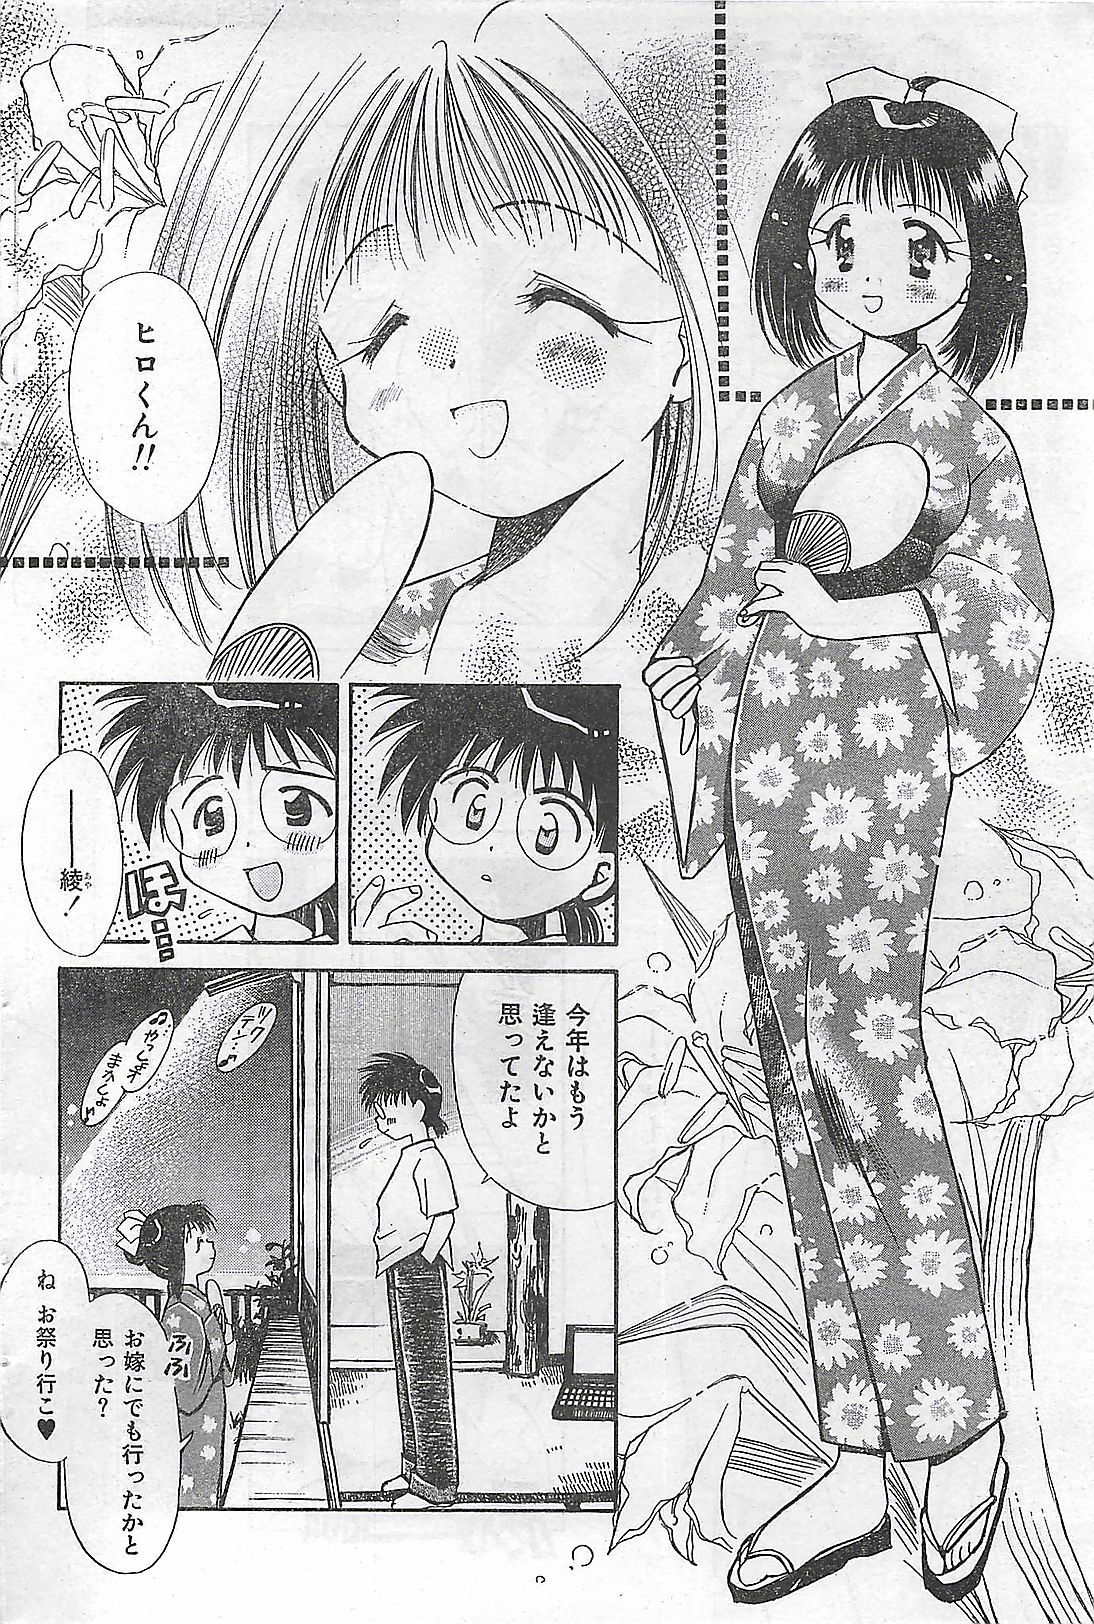 COMIC Zero-Siki No.4 1998-04 (雑誌) COMIC 零式 No.4 1998年04月号